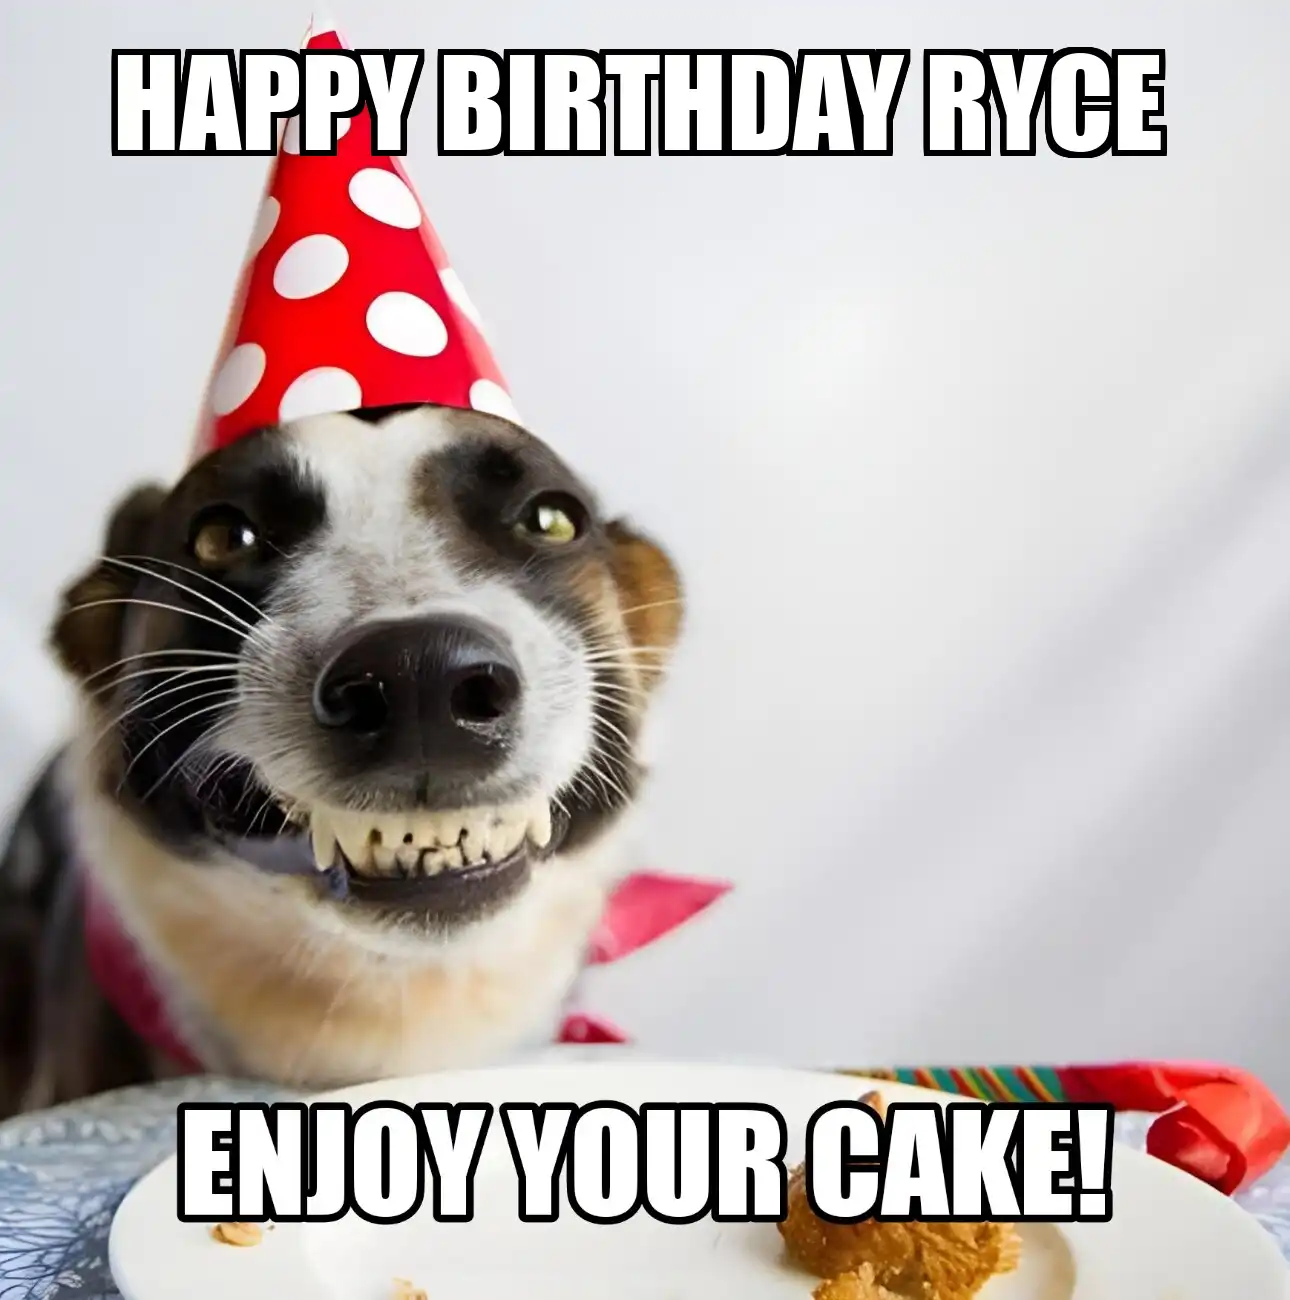 Happy Birthday Ryce Enjoy Your Cake Dog Meme